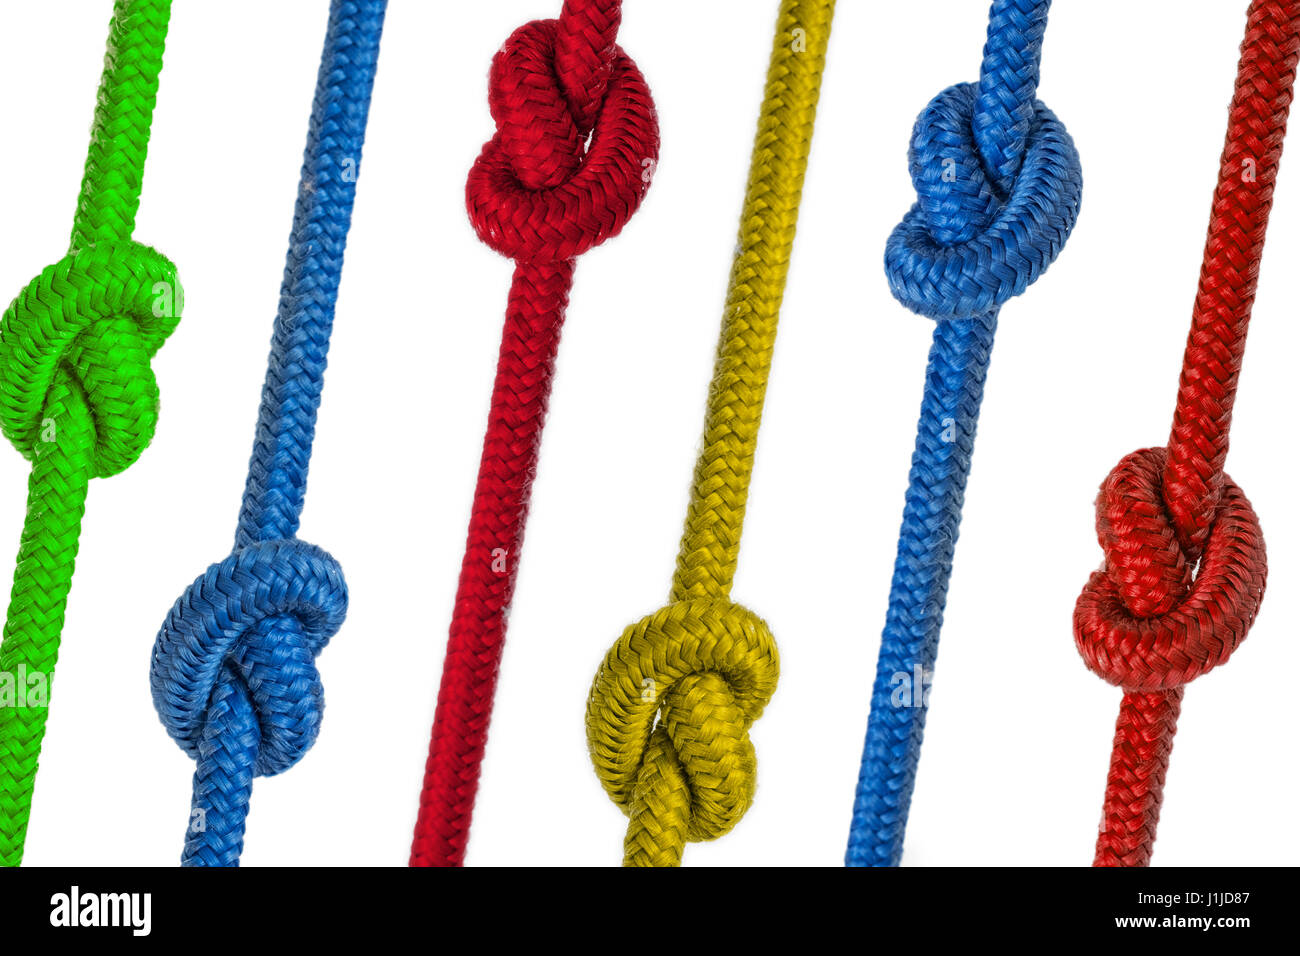 Cuerdas anudadas de color - sogas con nudos coloreados Fotografía